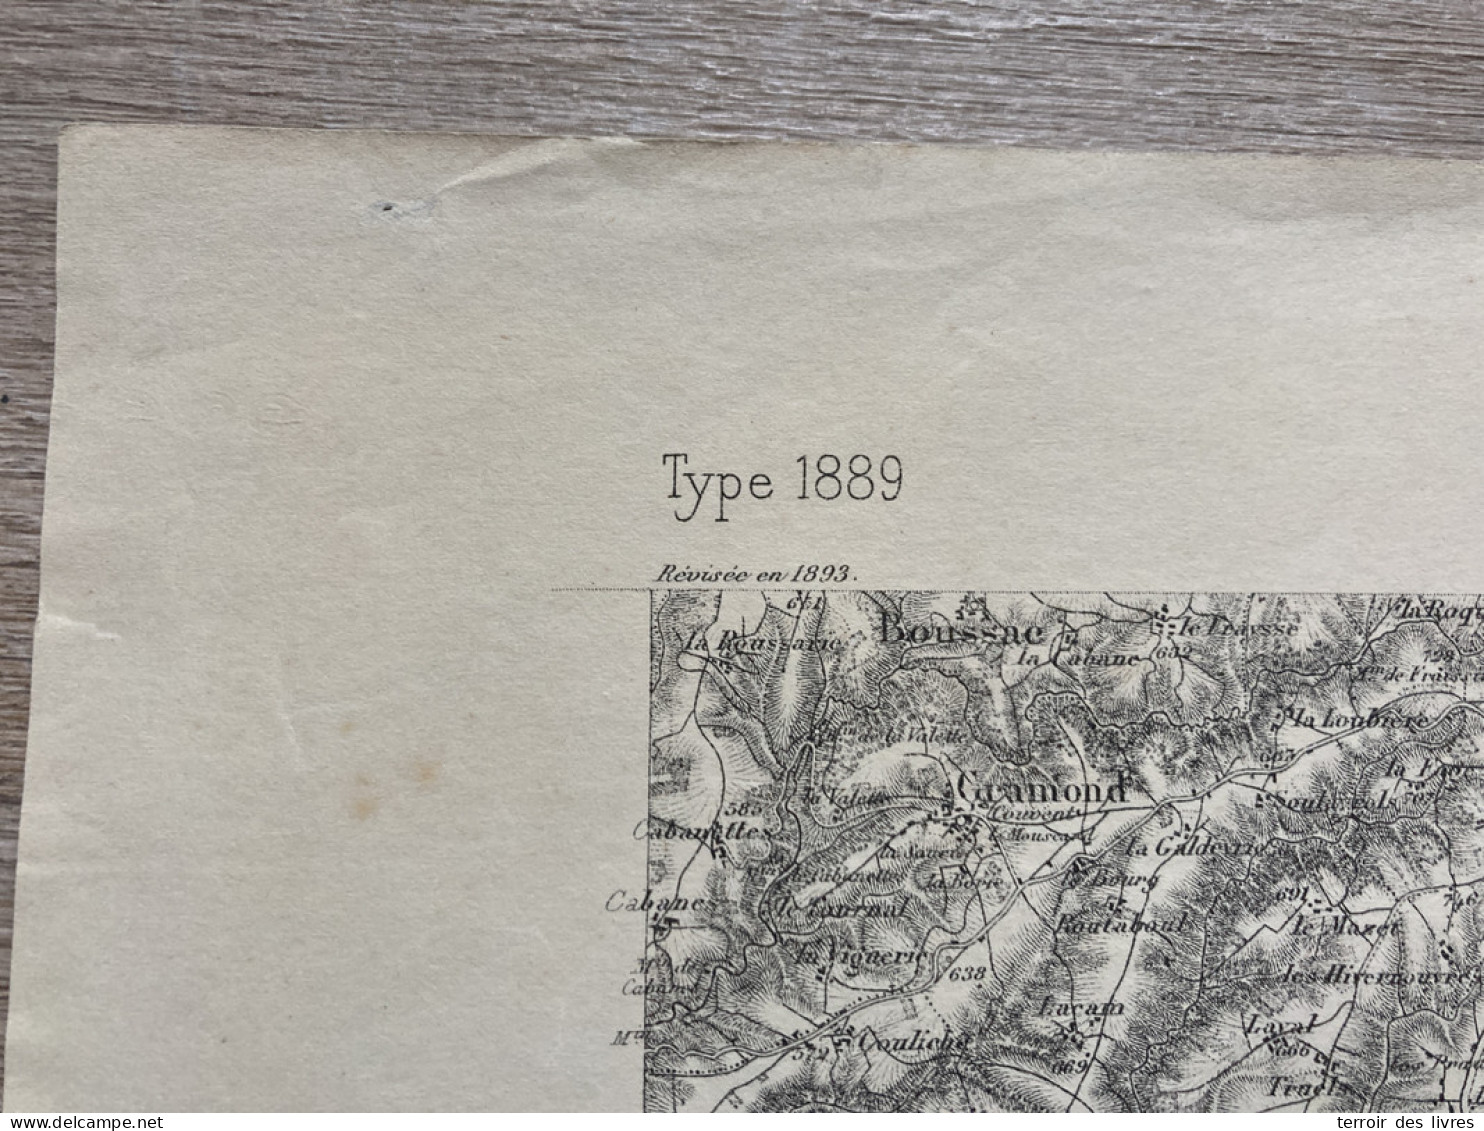 Carte état Major RODEZ S.E. 1893 35x54cm SAINTE JULIETTE SUR VIAUR CALMONT COMPS-LA-GRAND-VILLE CASSAGNES-BEGONHES SALMI - Geographical Maps